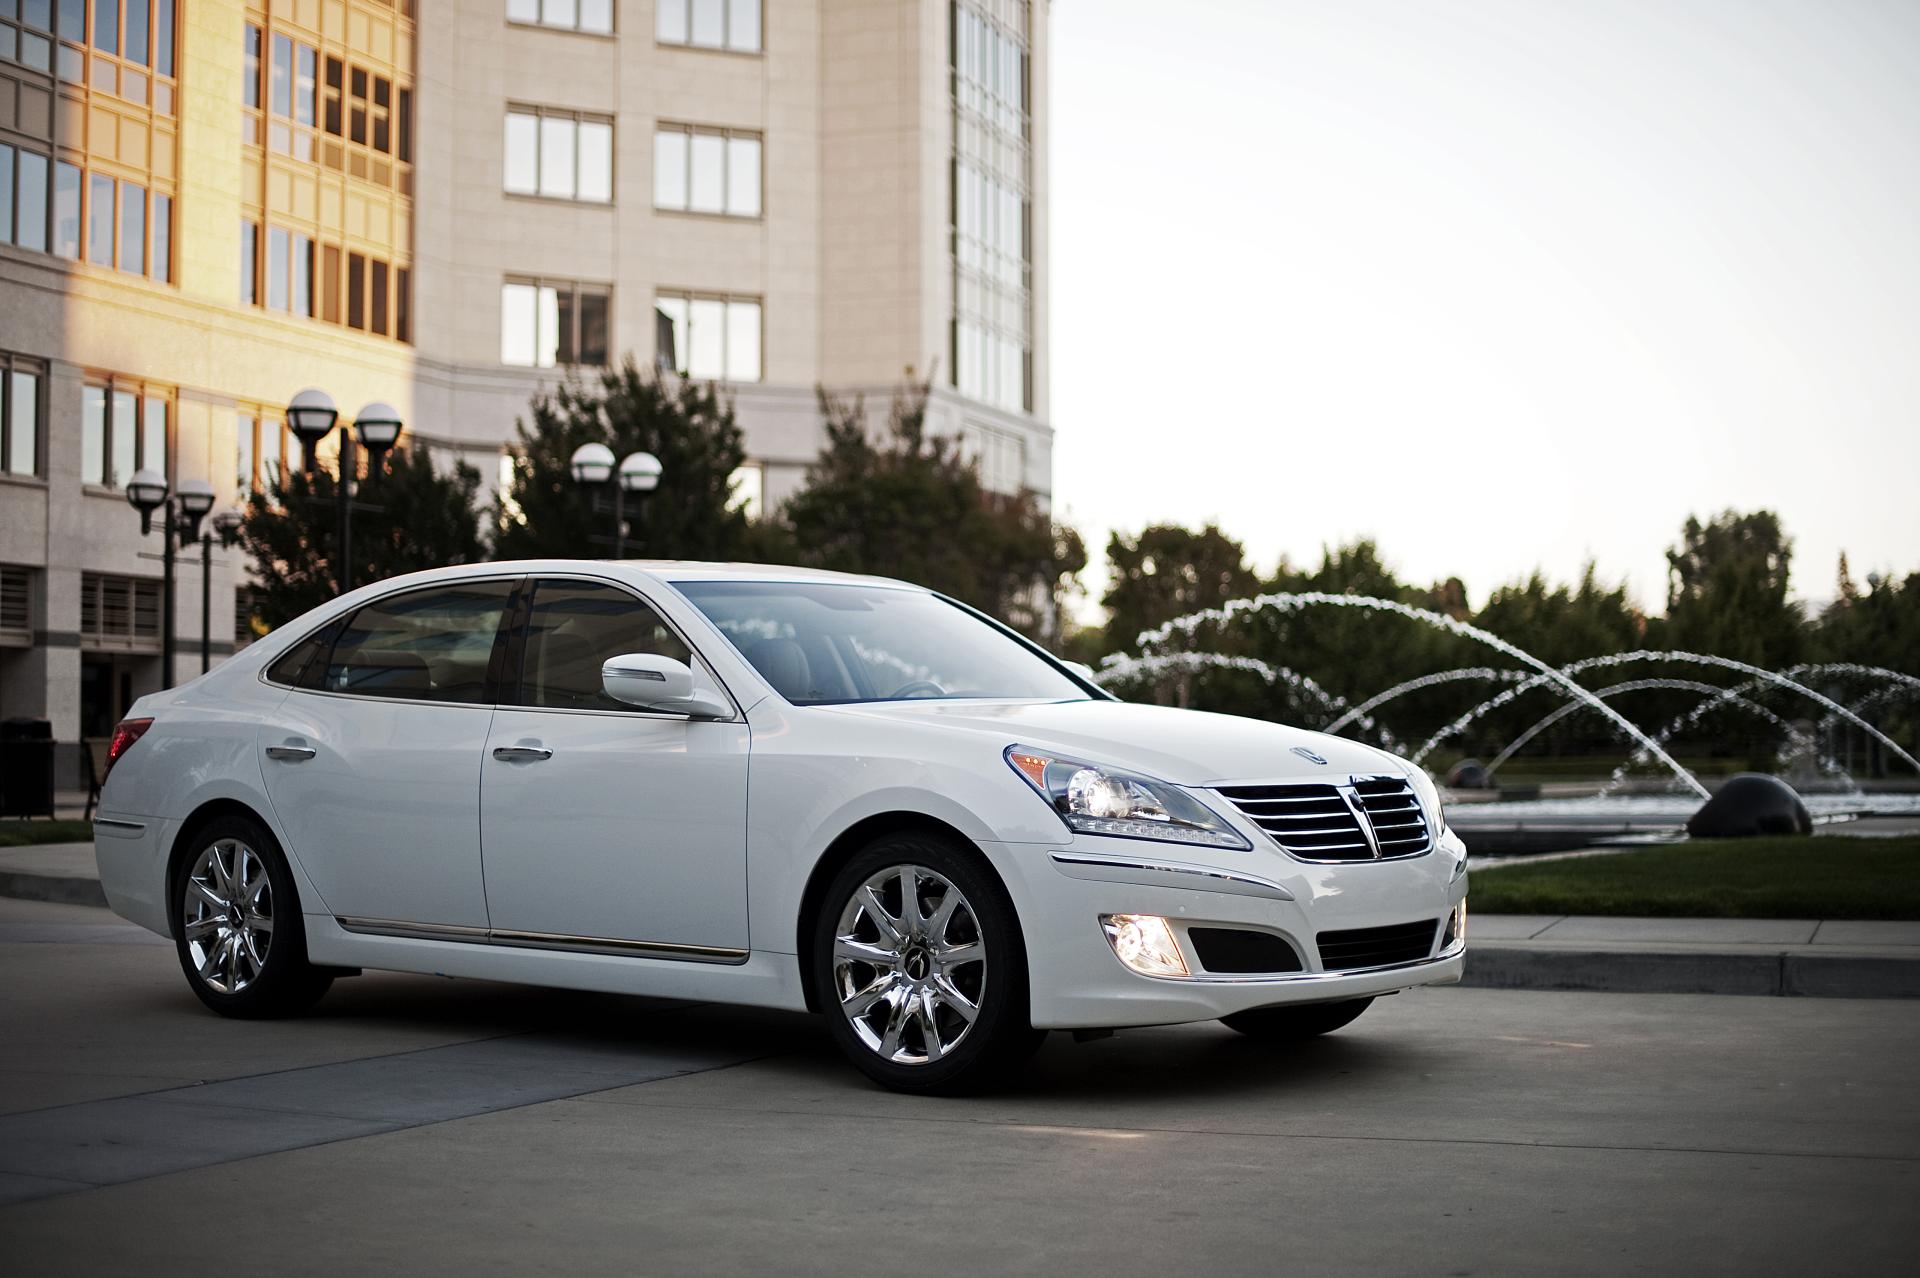 2013 Hyundai Equus News and Information - conceptcarz.com